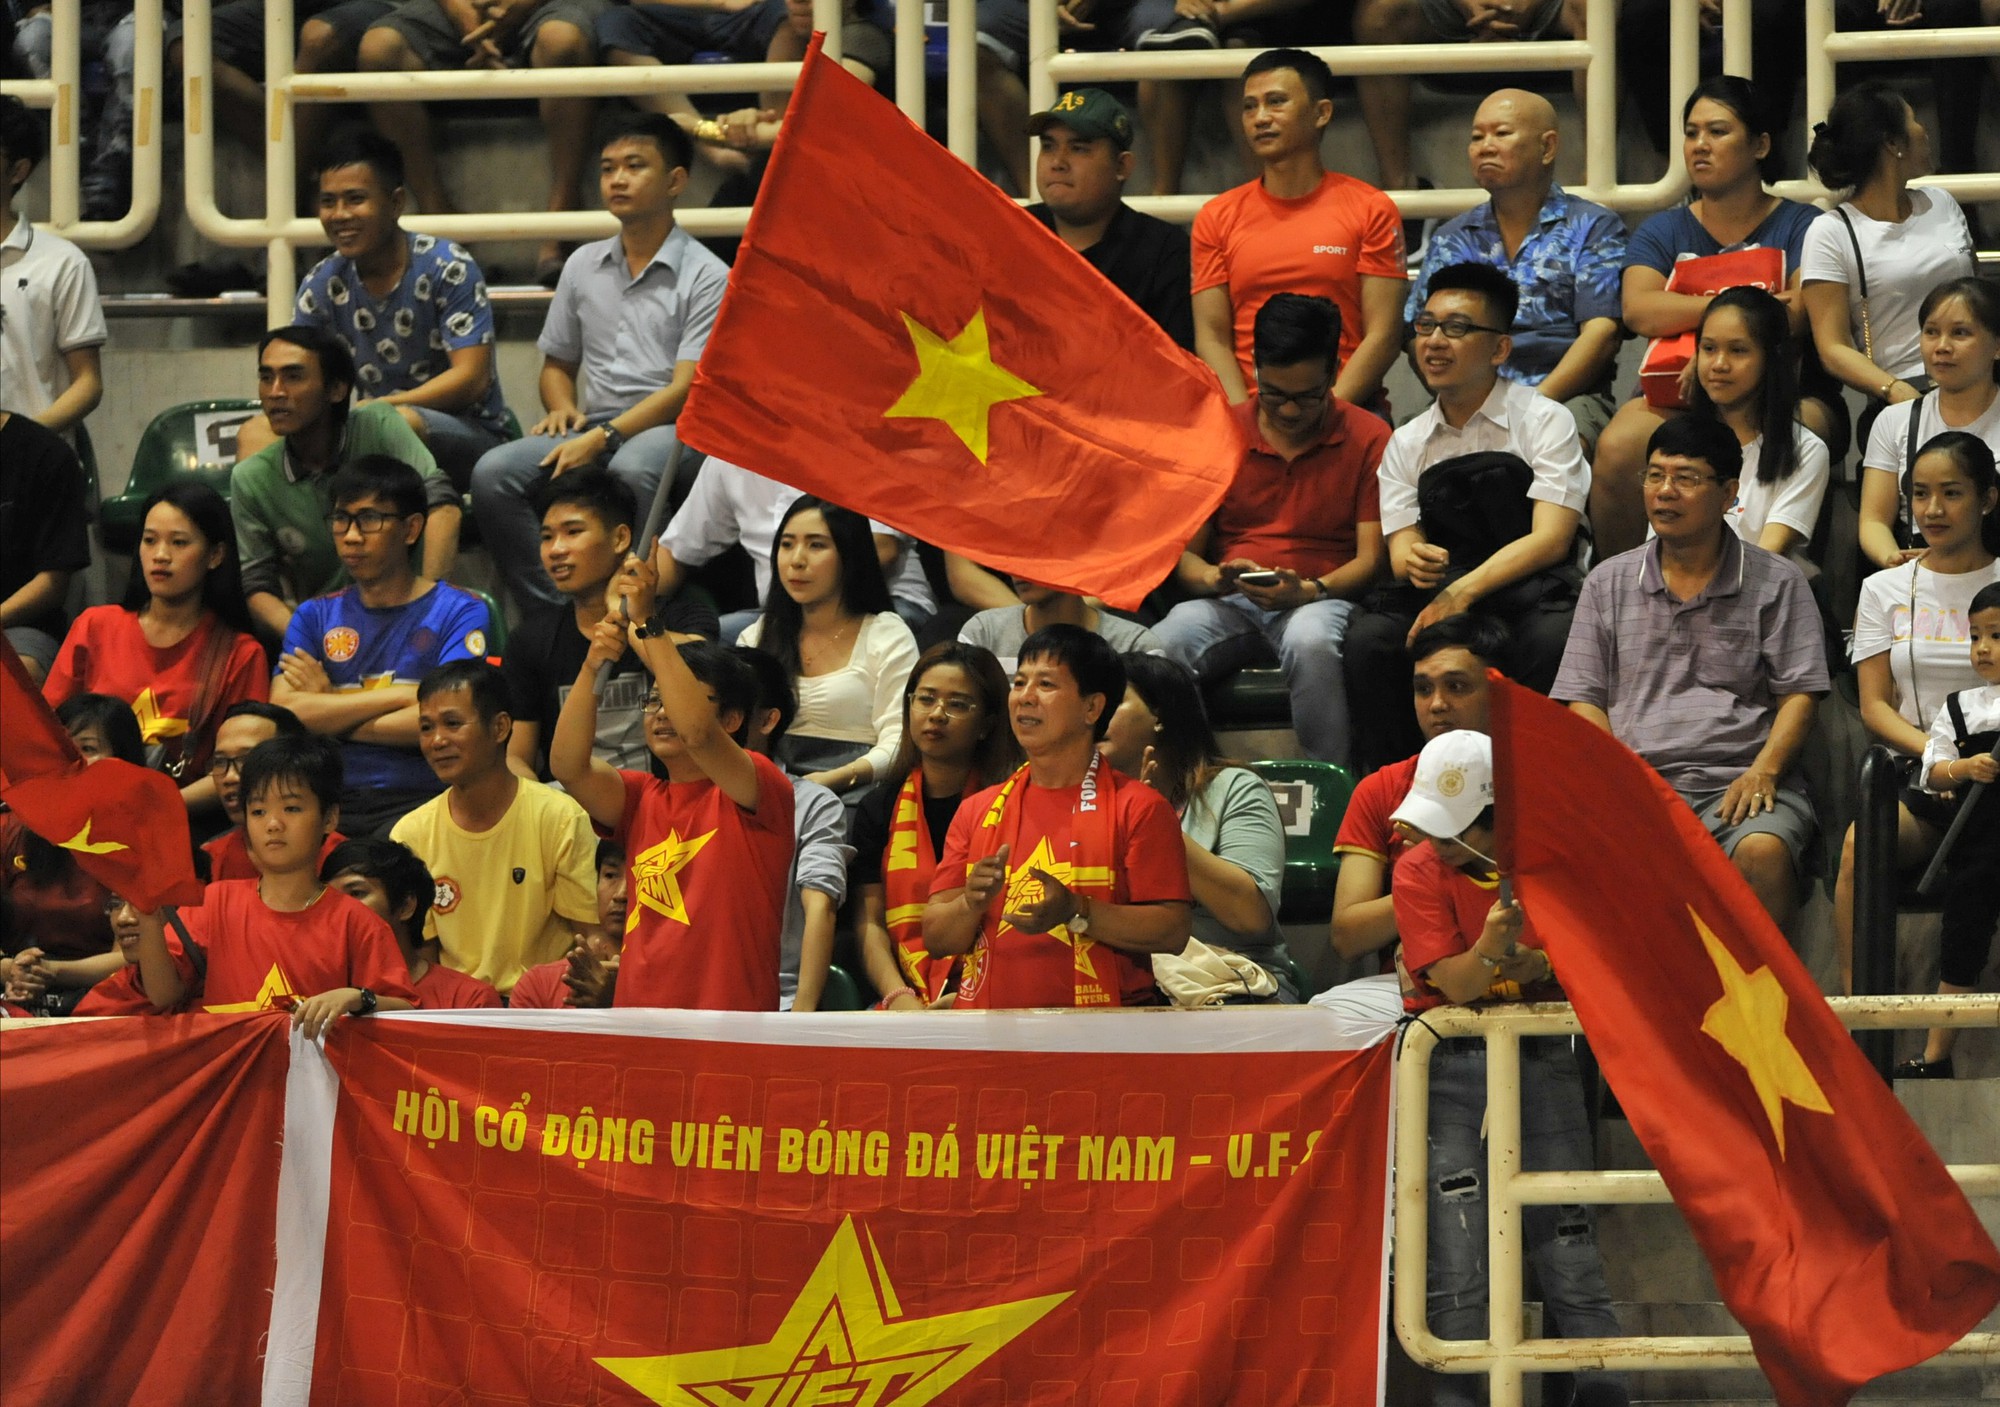 Hình ảnh này sẽ cho bạn những cách xếp lá cờ Việt Nam độc đáo và mới lạ nhất. Bạn sẽ học được cách tạo nên những hình ảnh đa dạng với lá cờ Việt Nam, mang ý nghĩa sâu sắc. Hãy tham gia cùng chúng tôi để trao dồi kỹ năng và thỏa mãn niềm đam mê yêu nước của bạn nào!